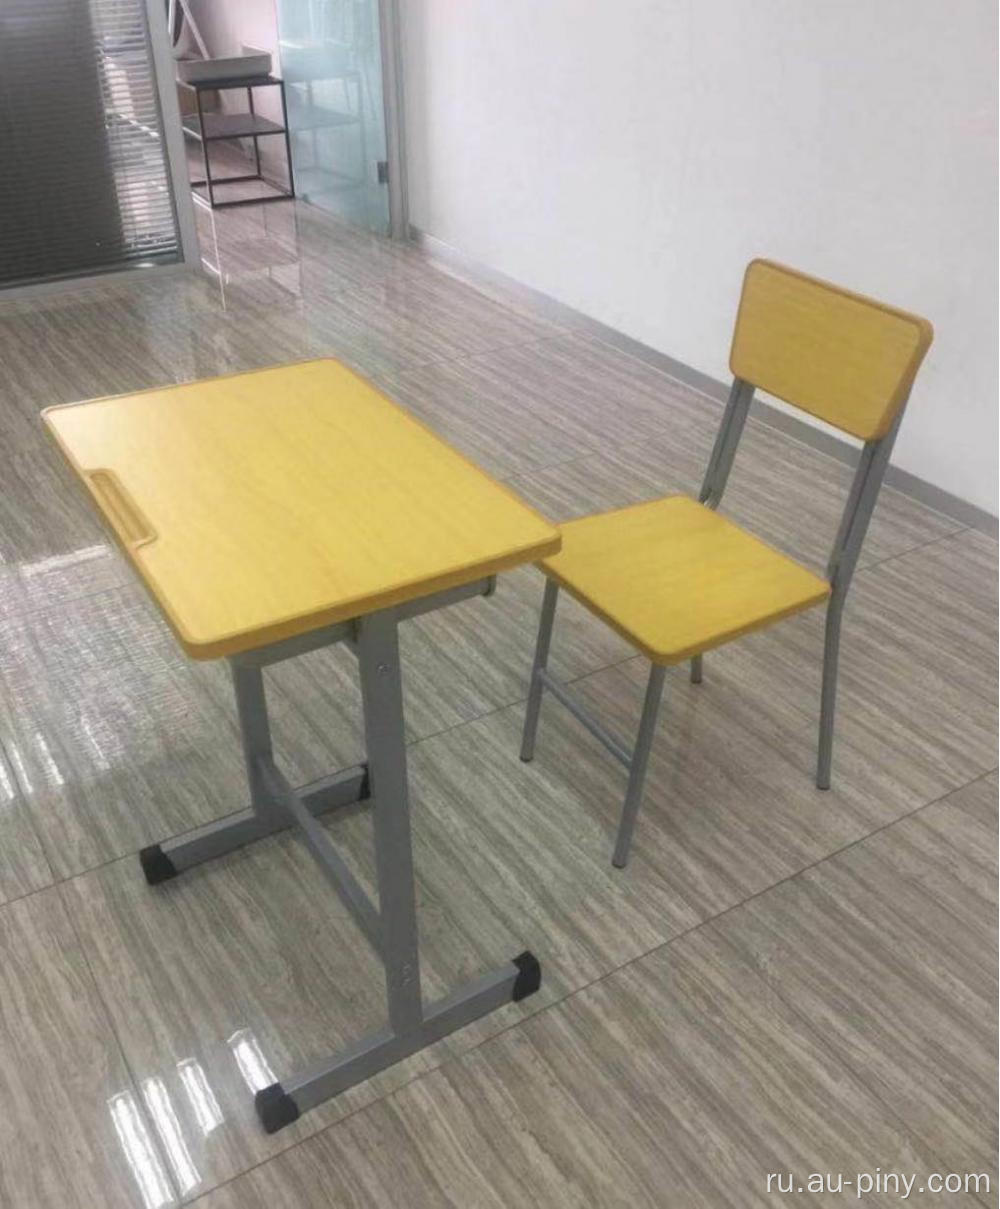 Школьный стол и стул школьный стол